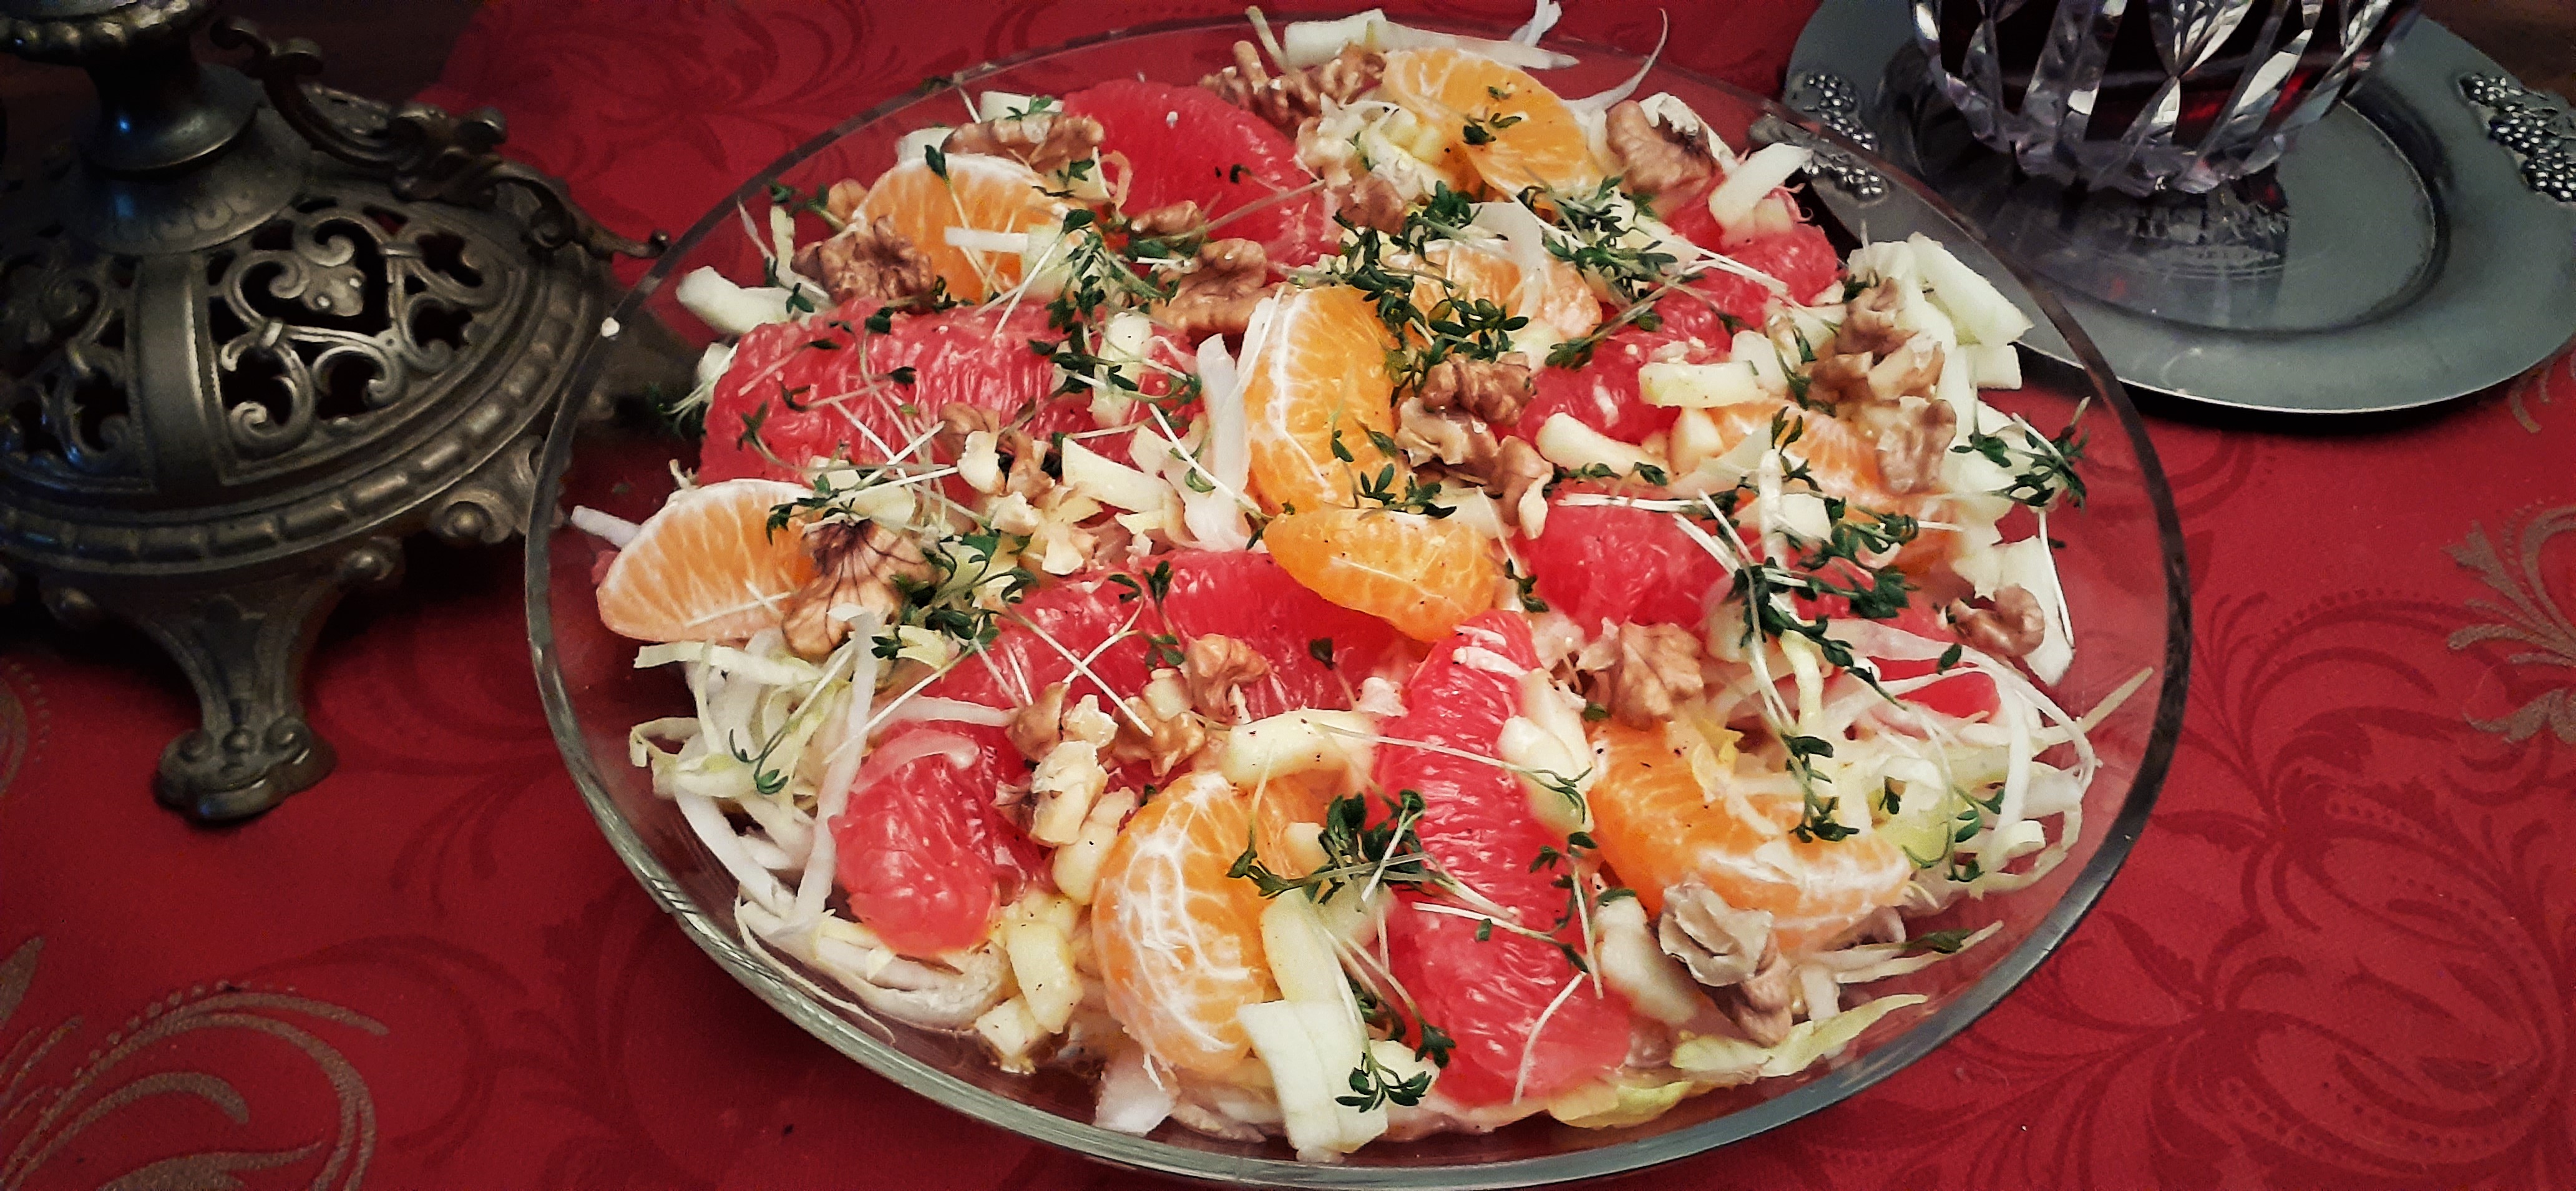 Chicorée-Salat mit Grapefruit und Kresse - Winter-Frühjahr